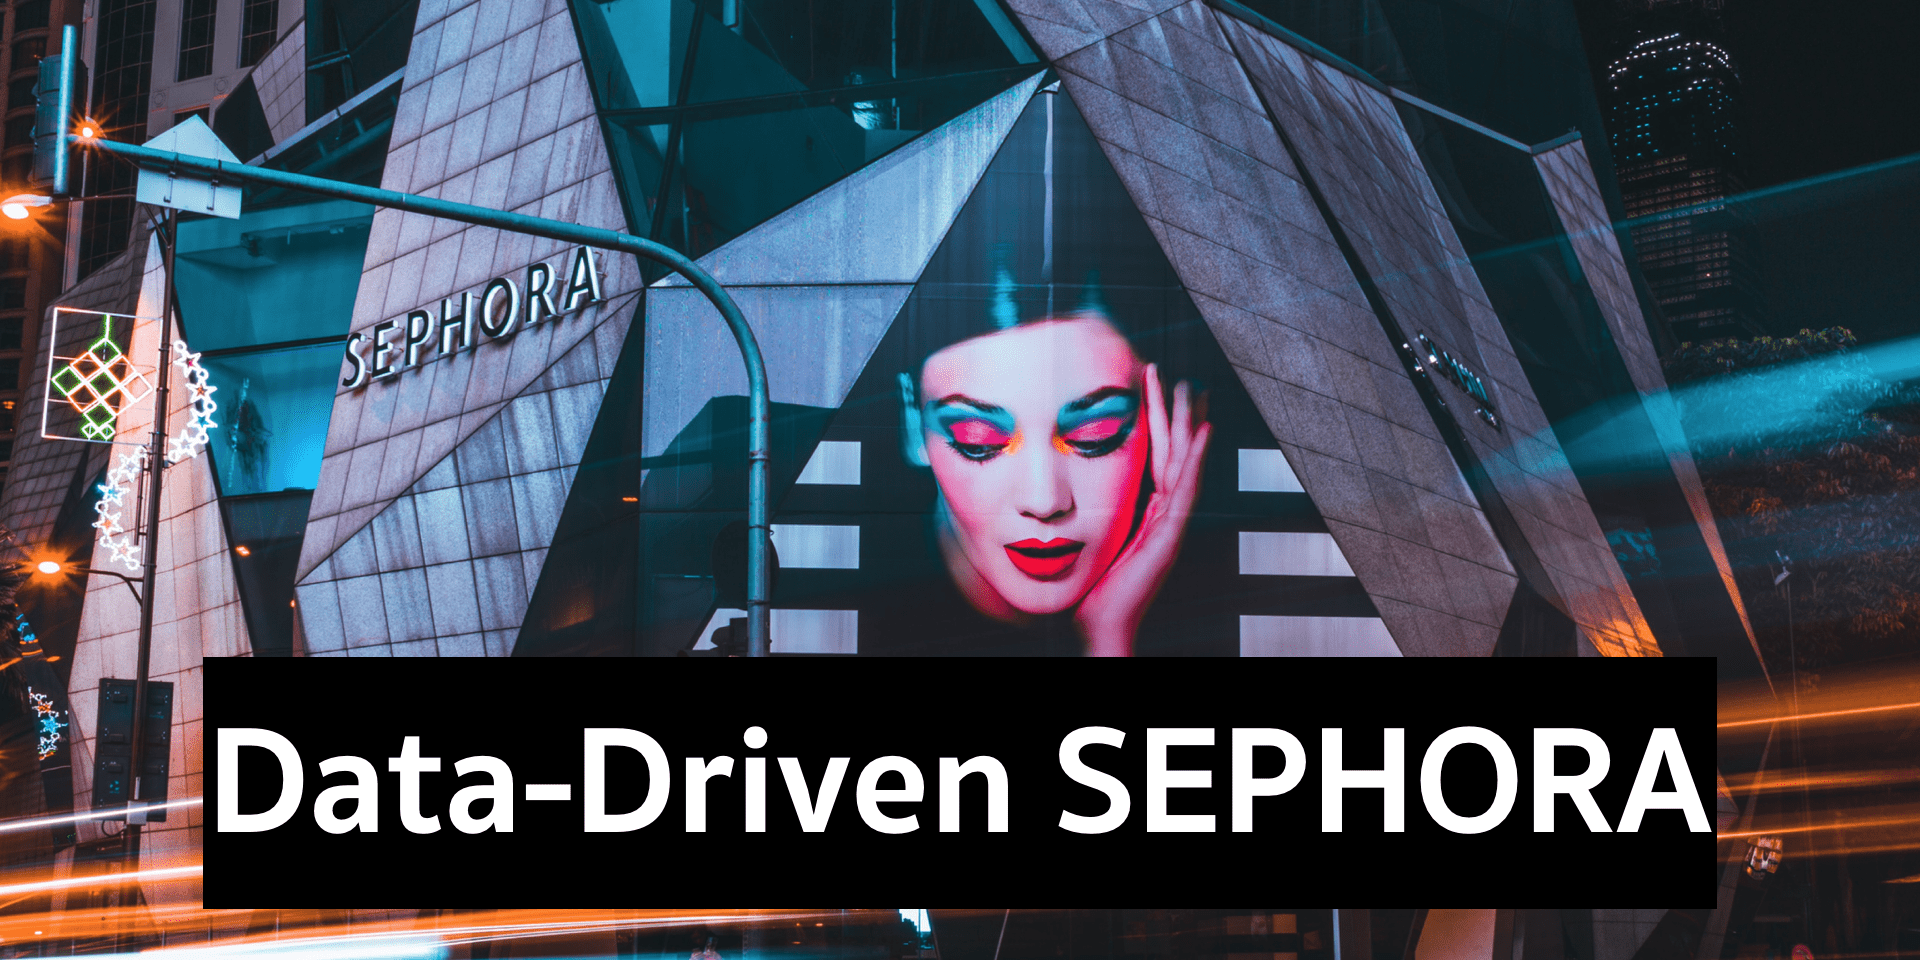 Data-Driven เบื้องหลังสาเหตุ ทำไมสาวๆ ถึงชอบเข้า Sephora